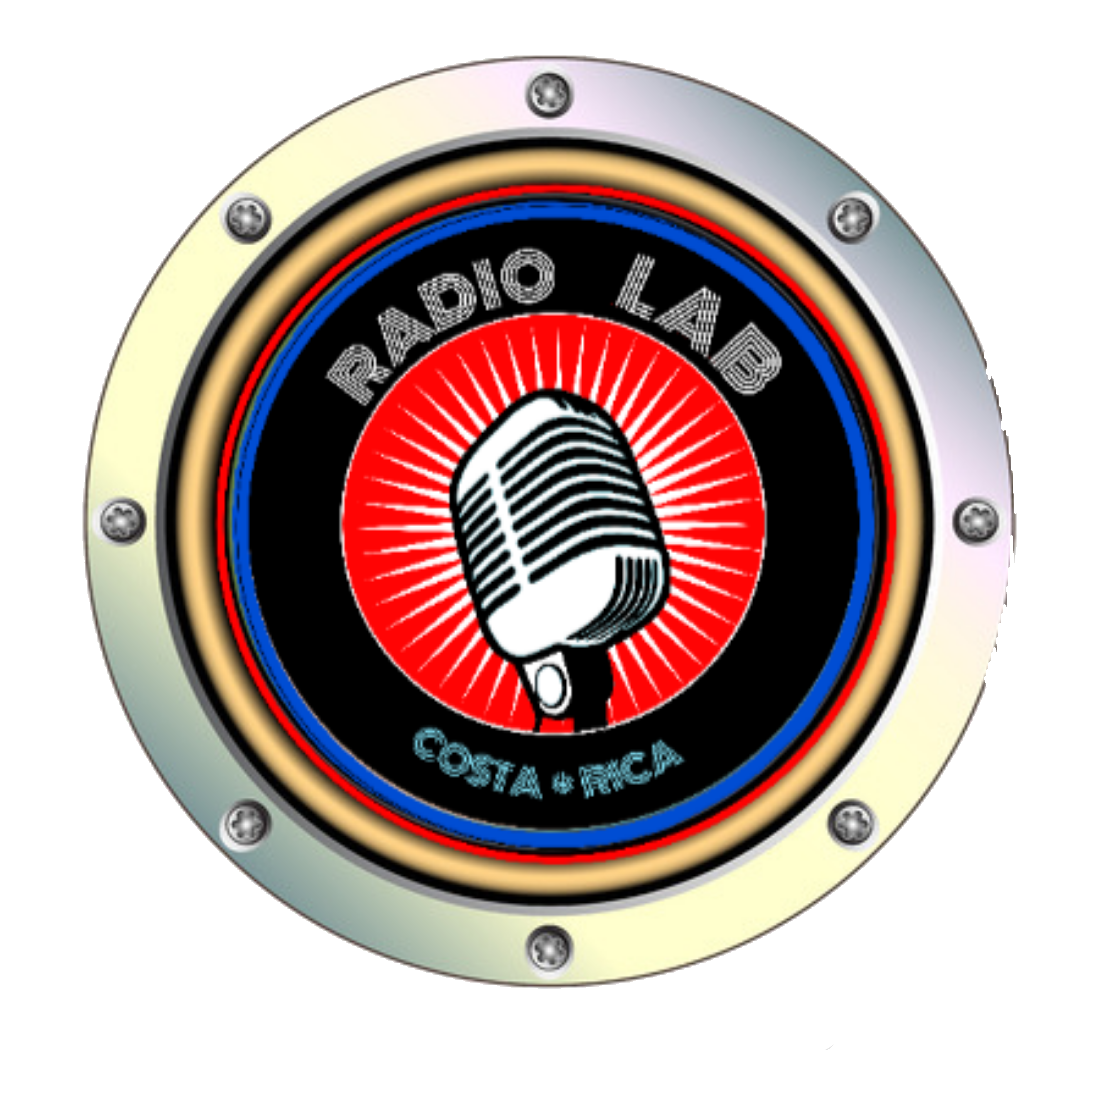 RadioLAB de Costa Rica